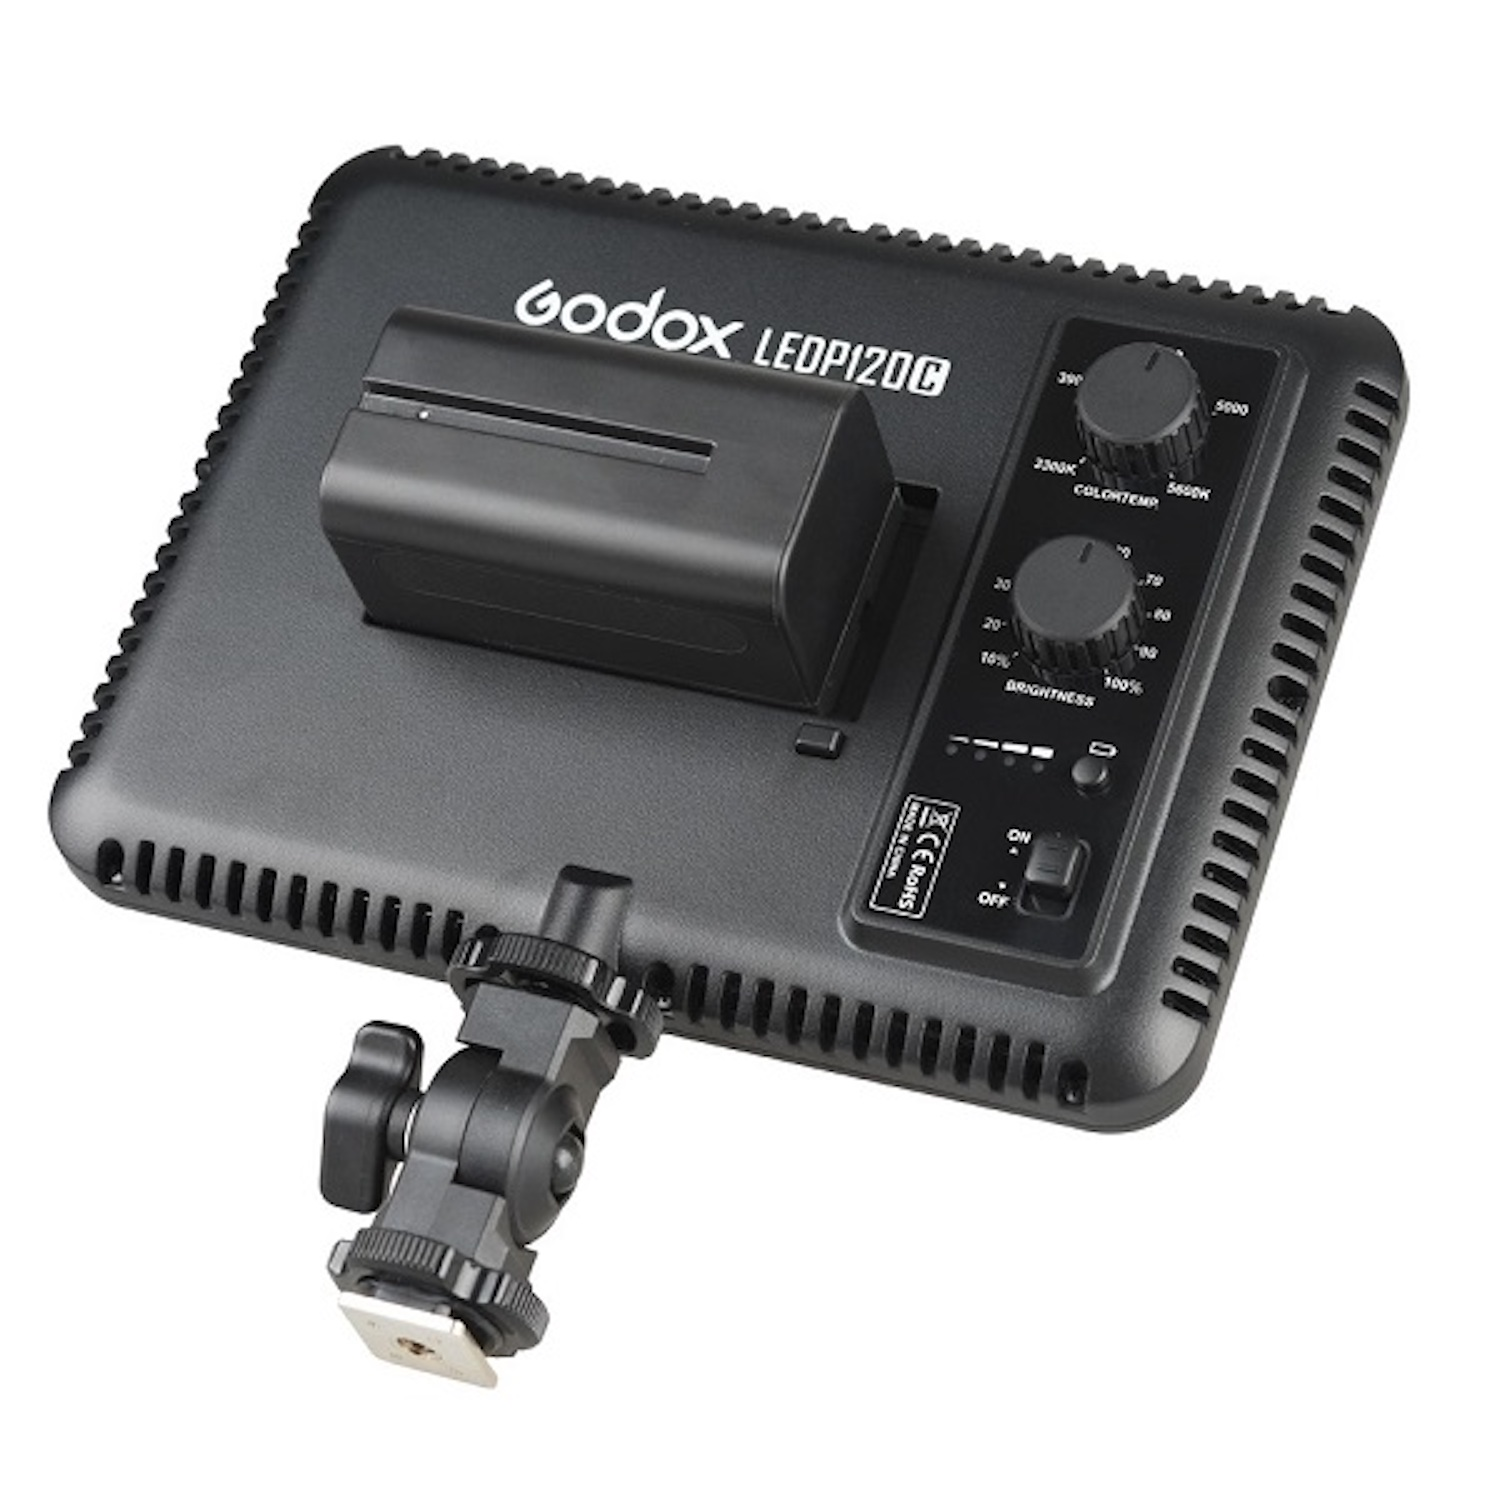 Dauerlicht für P120C Video Universal GODOX LED Licht